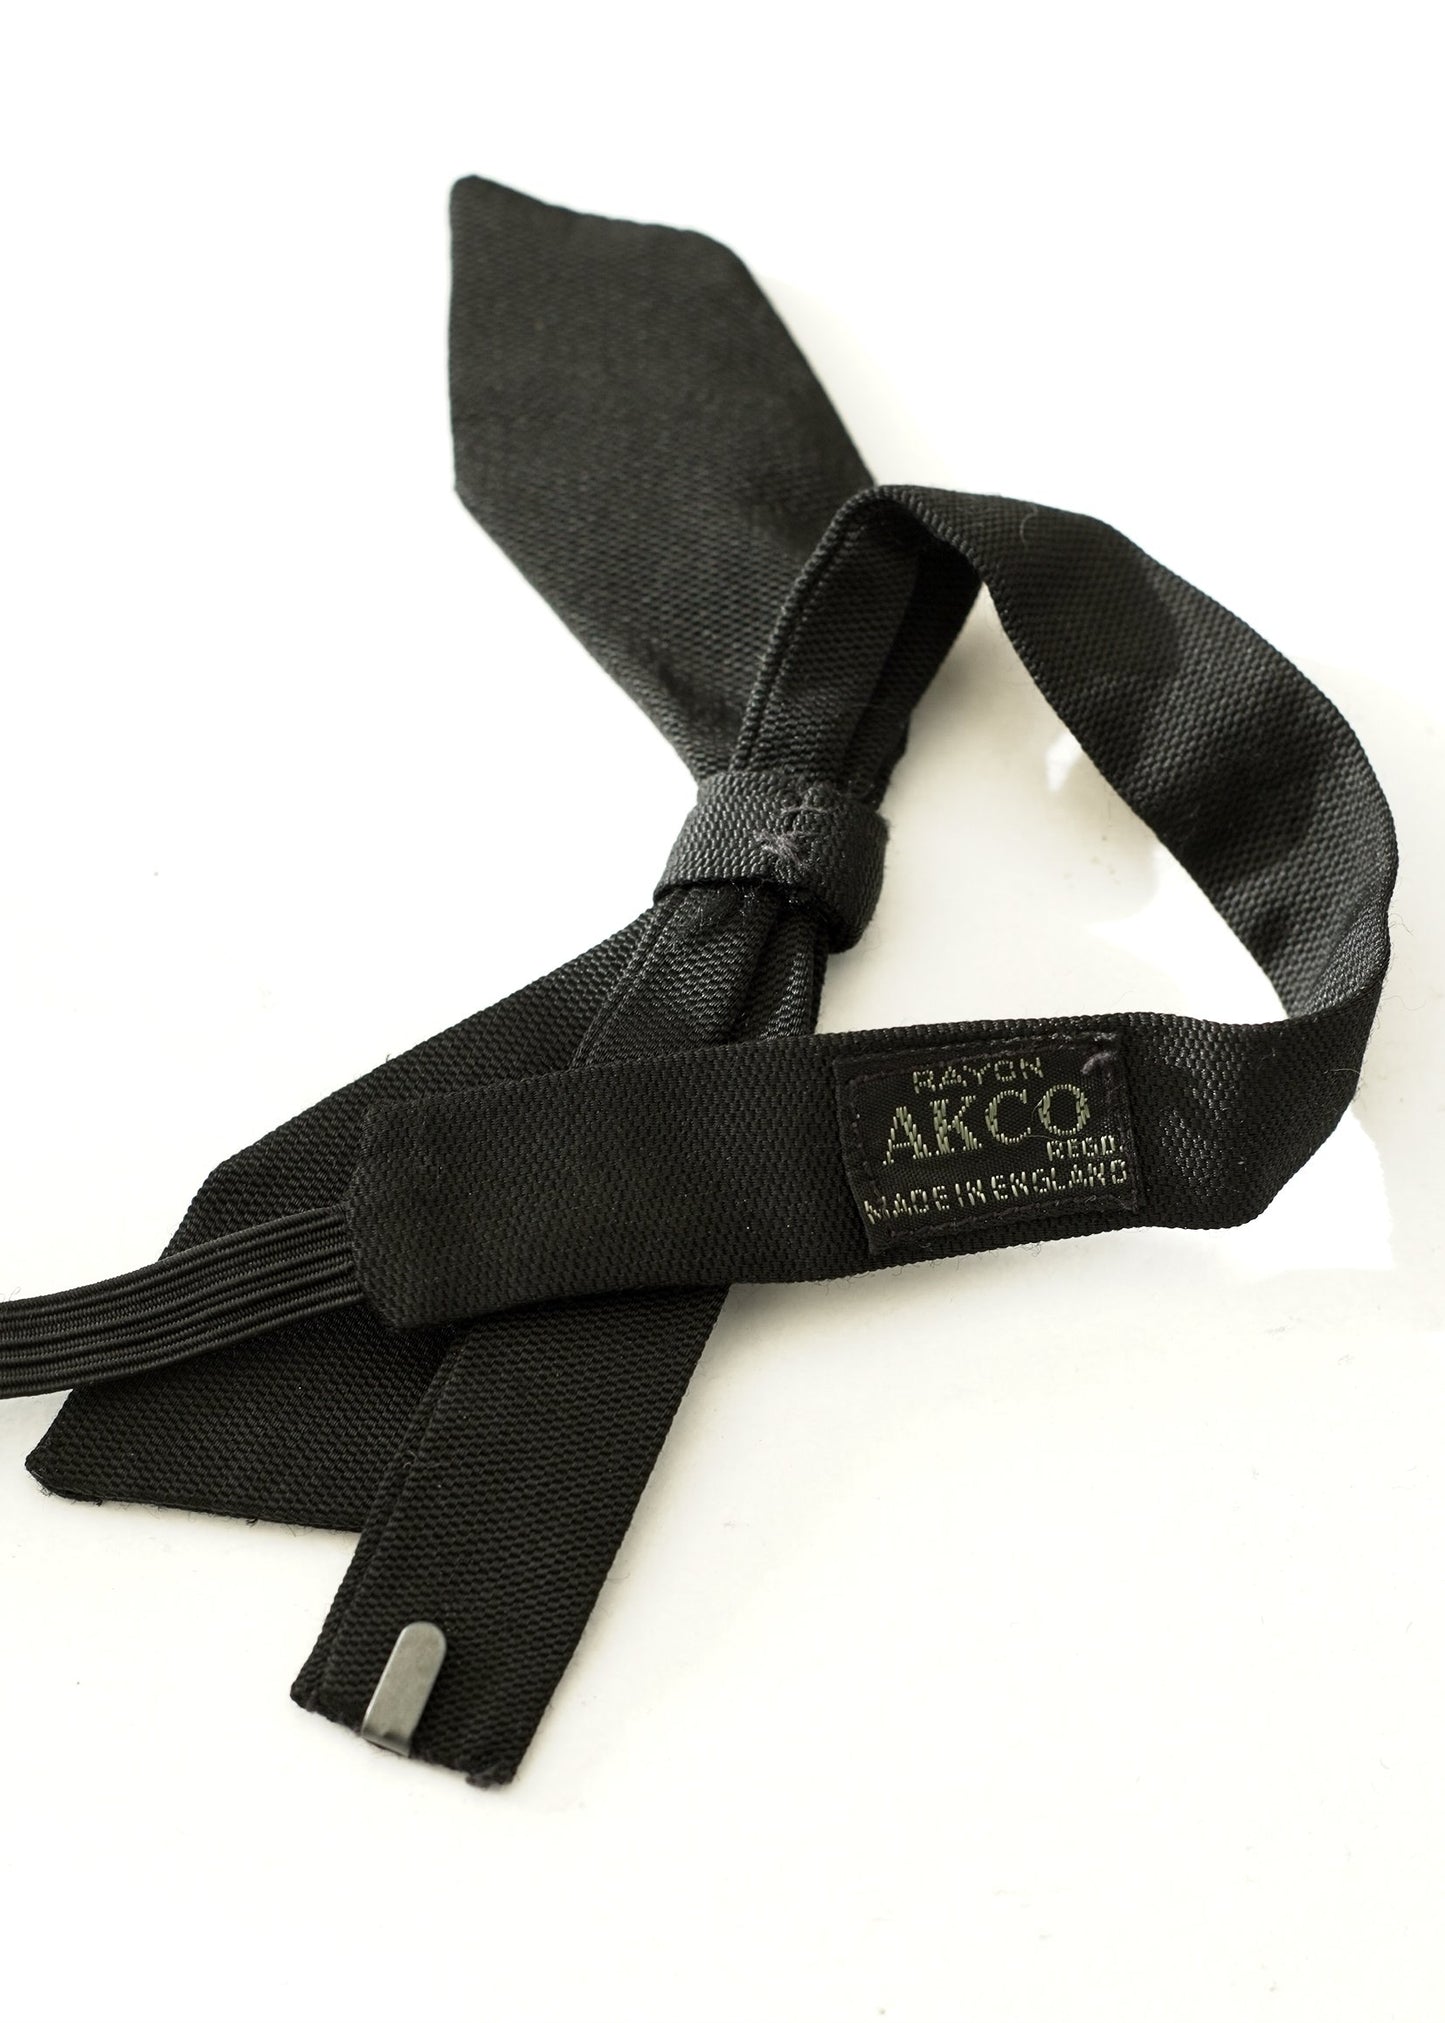 Men's Vintage Acko Black Shadow Bow Tie